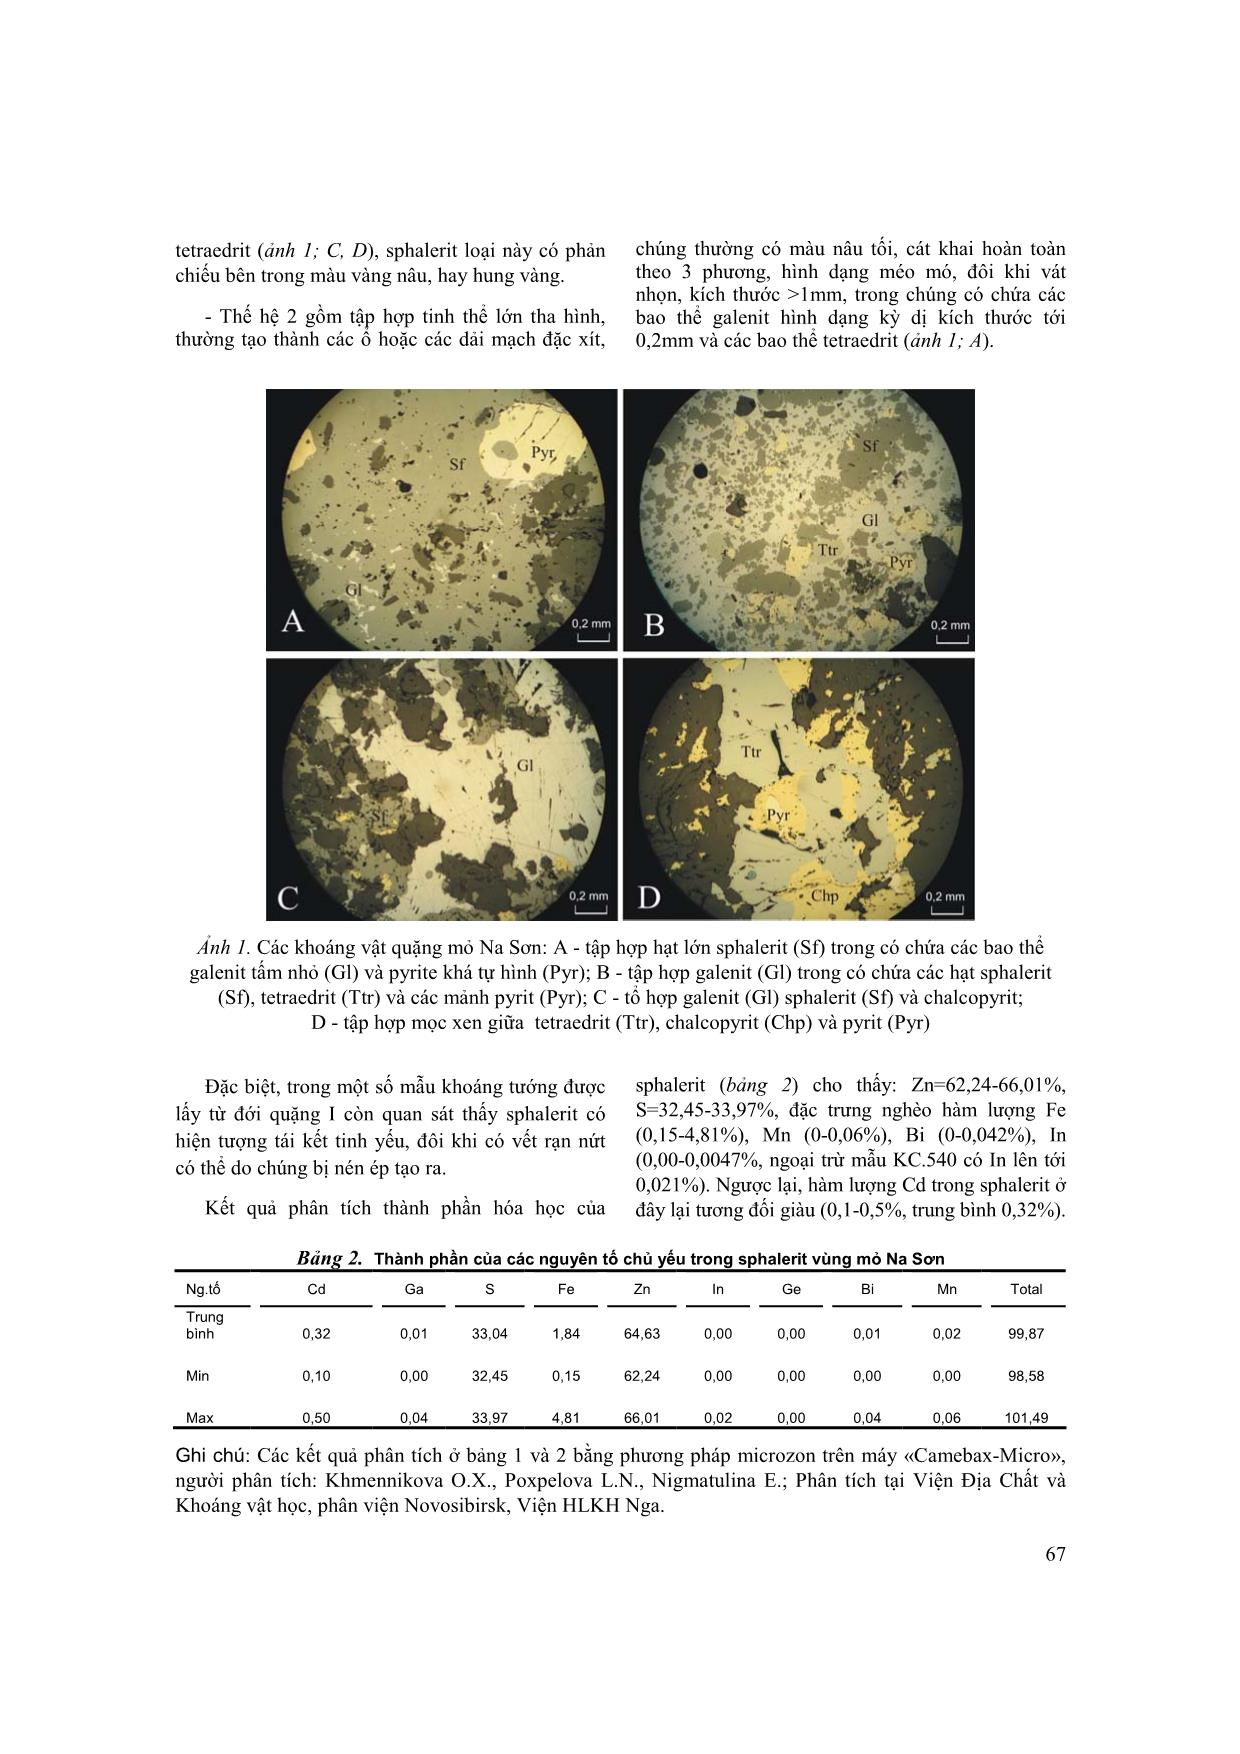 Một số kết quả nghiên cứu mới về đặc điểm phân bố và thành phần vật chất của quặng hóa trong khu vực mỏ chì - kẽm Na Sơn trang 5